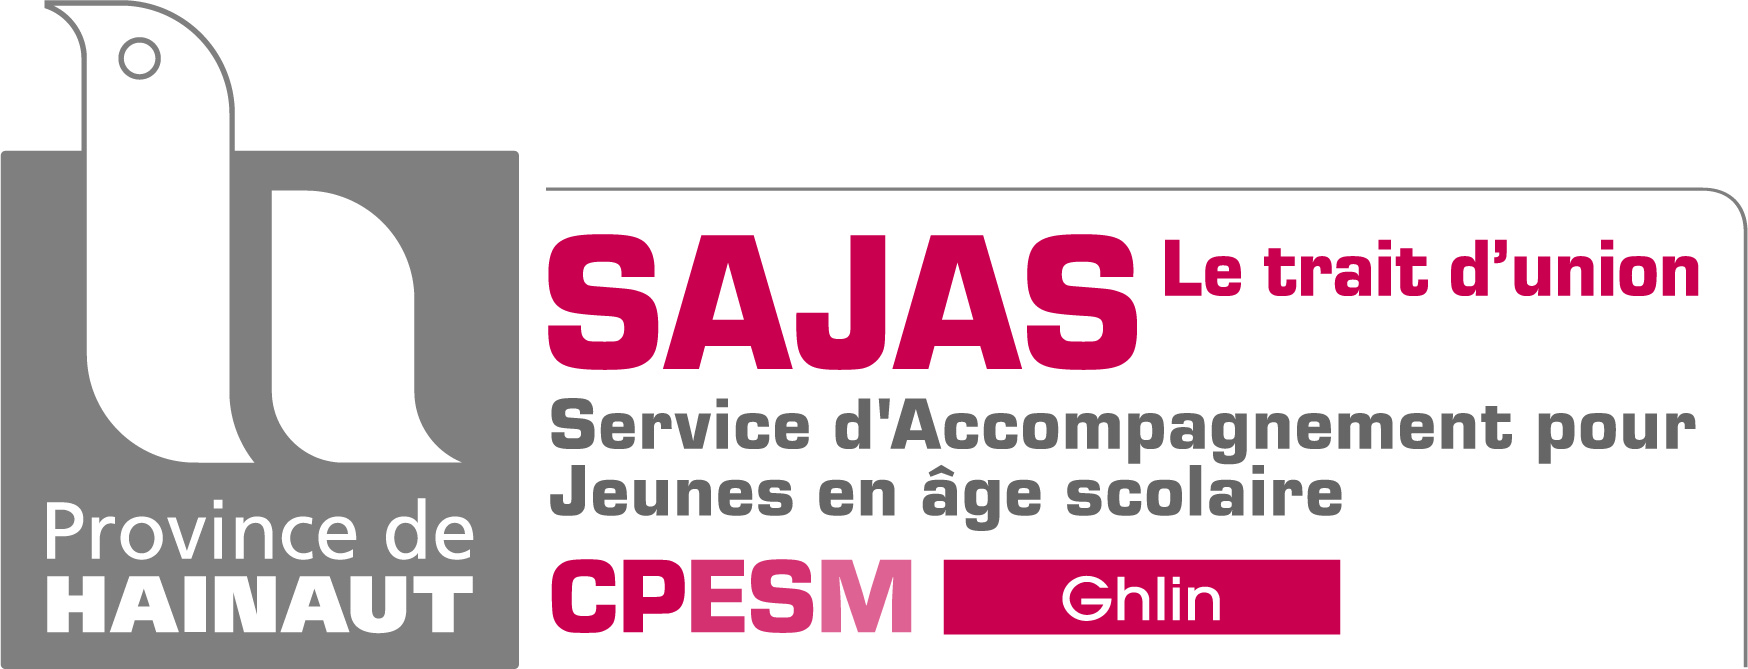 Logo du Sajas Trait union à Ghlin